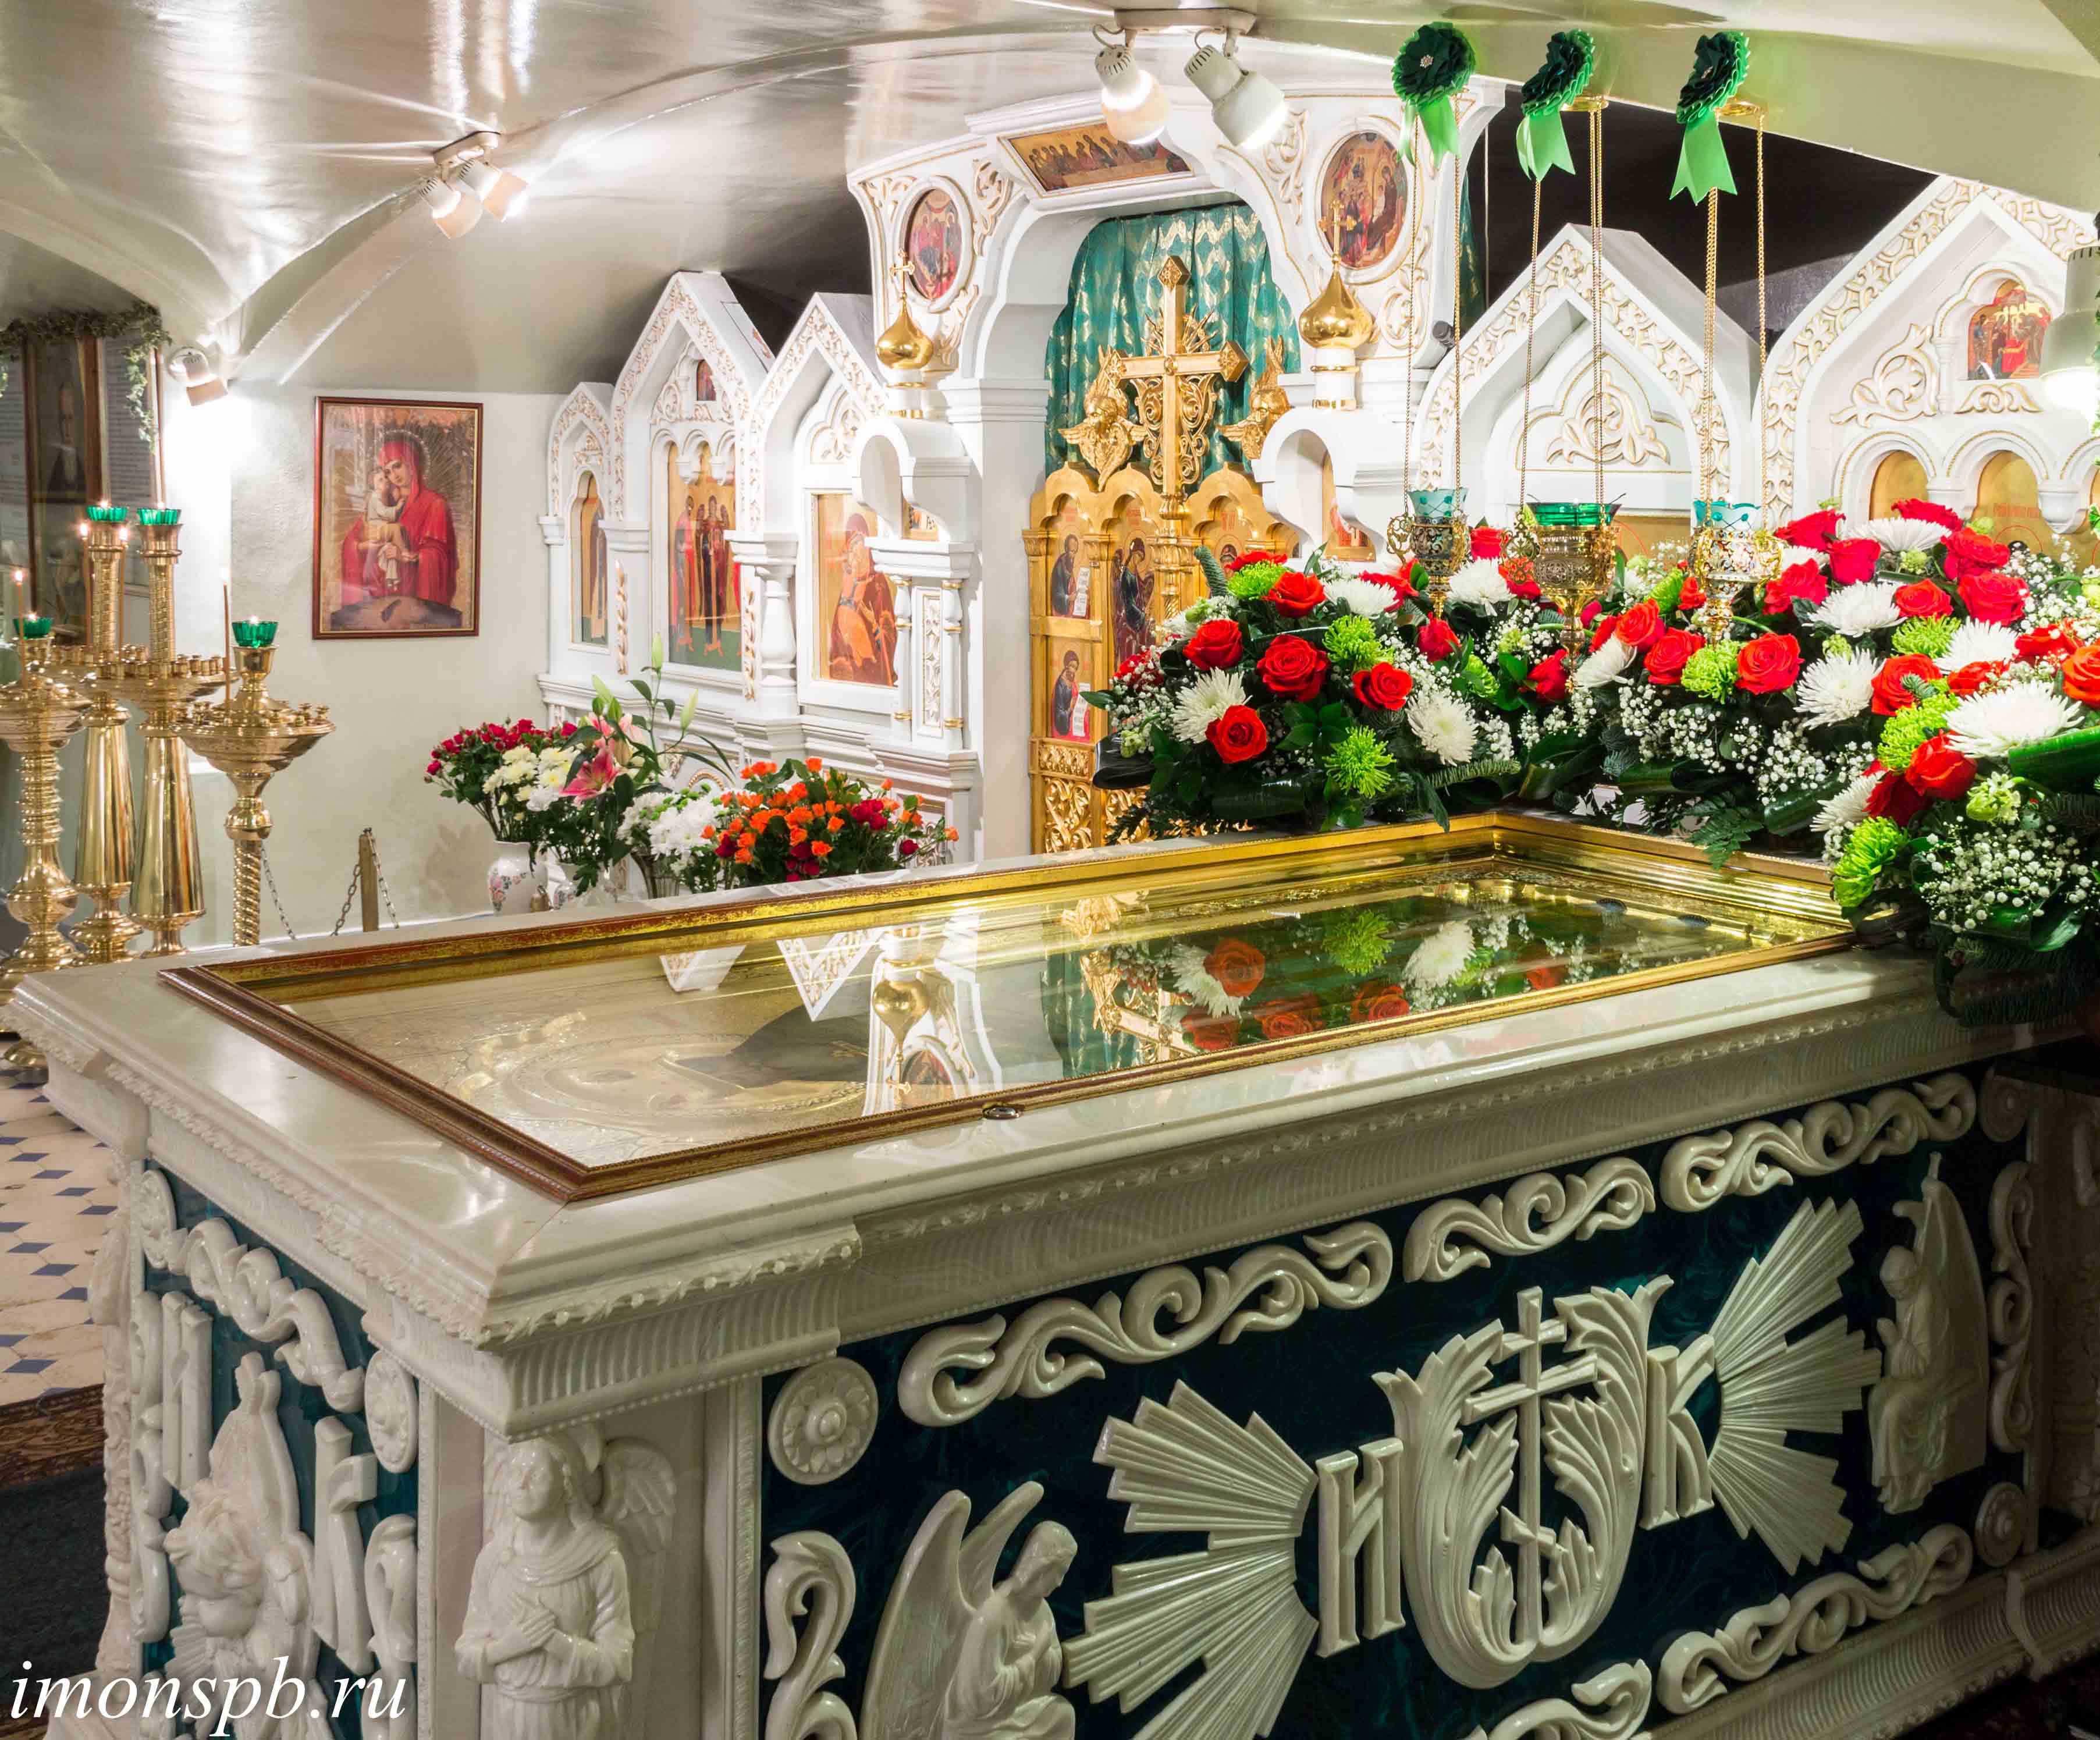 Δεν θα ξεχάσω την κατάνυξη που αισθάνθηκε ο Γέροντας Ευμένιος στον τάφο του Αγίου Ιωάννη της Κρονστάνδης - Φωτογραφία 1